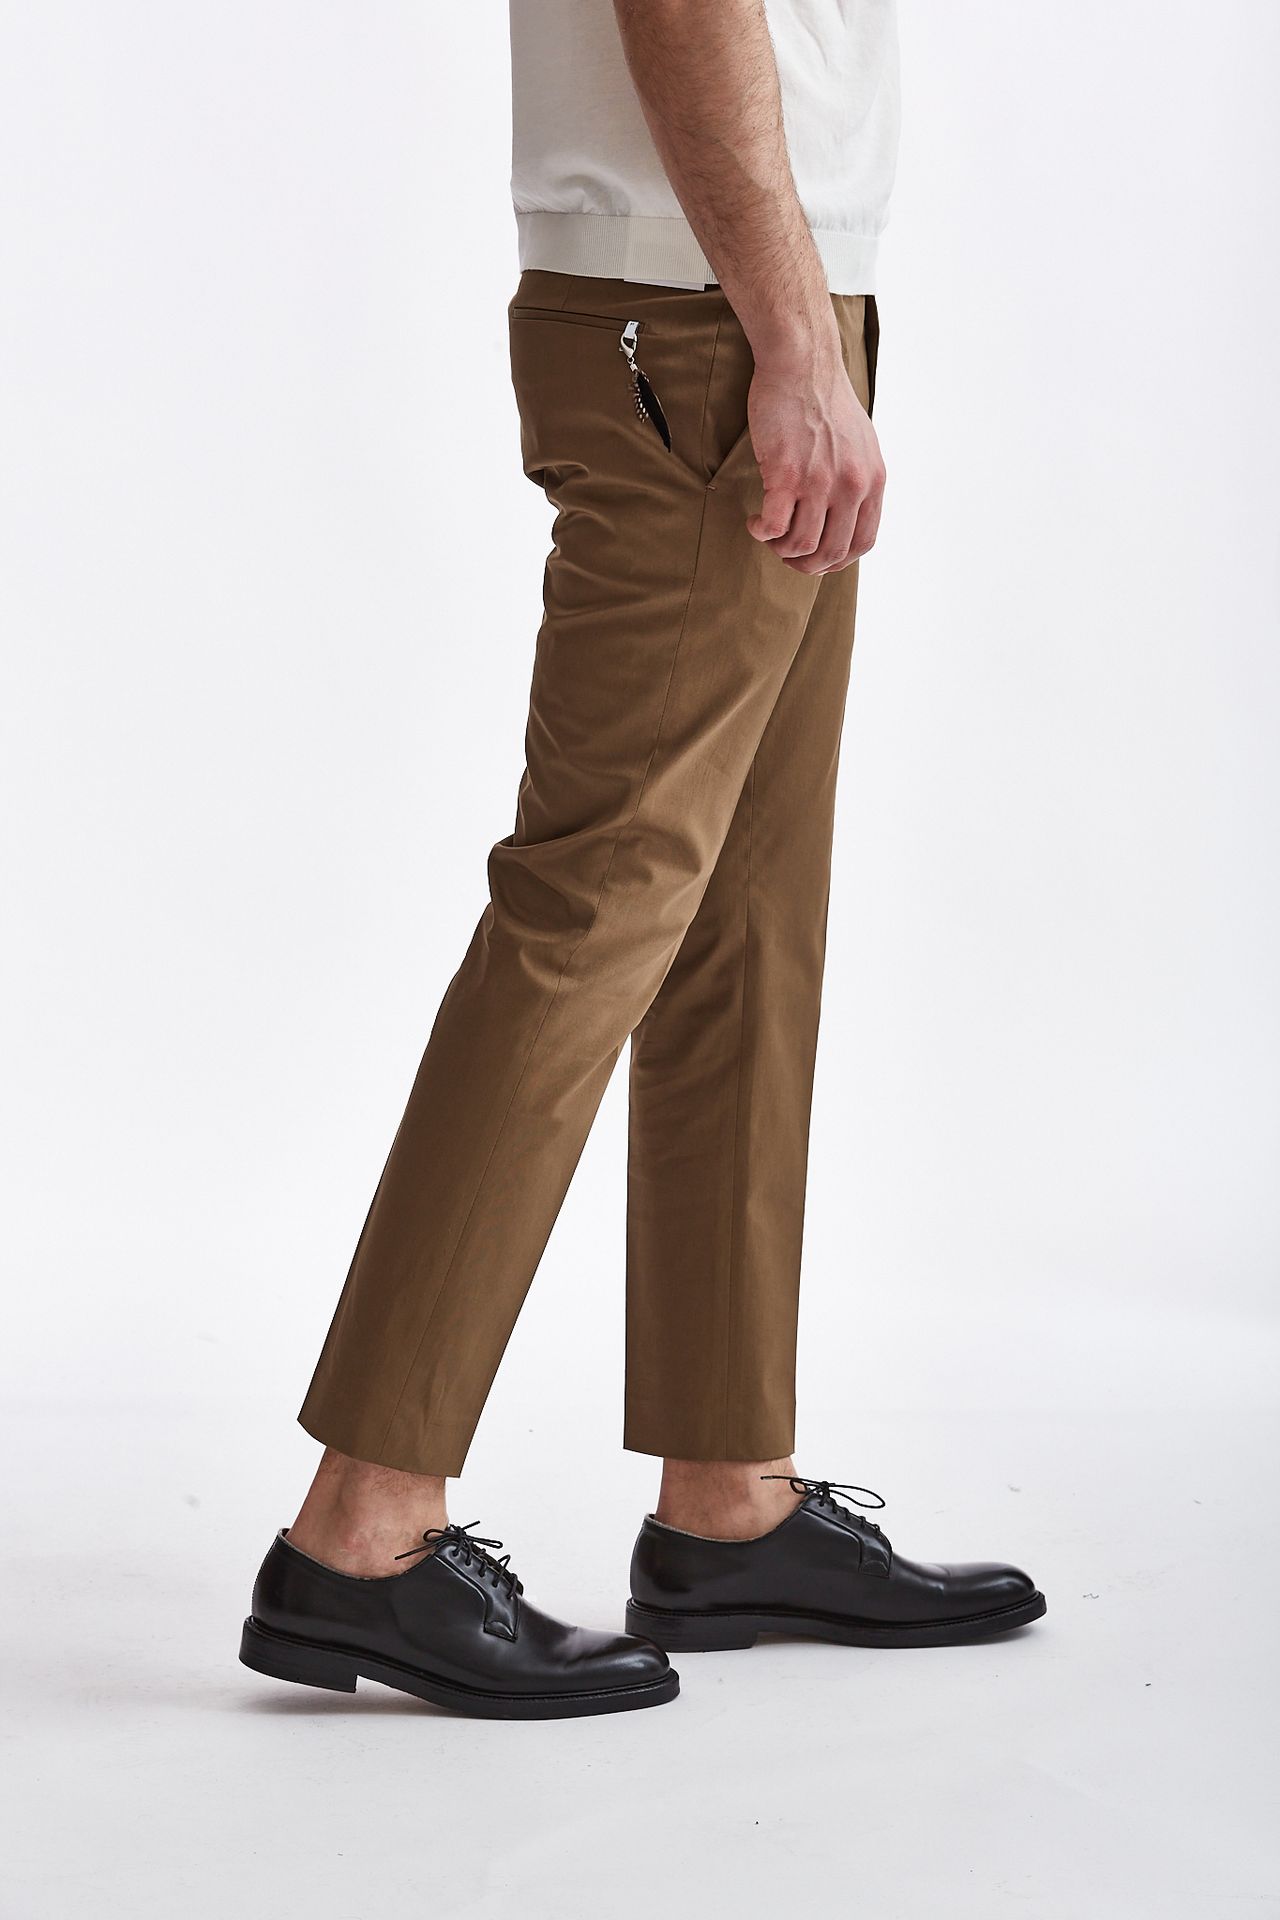 Pantalone EDGE-DIECI cammello